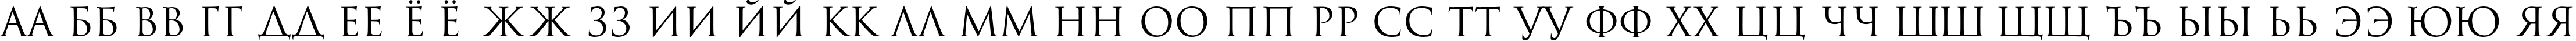 Пример написания русского алфавита шрифтом Romul